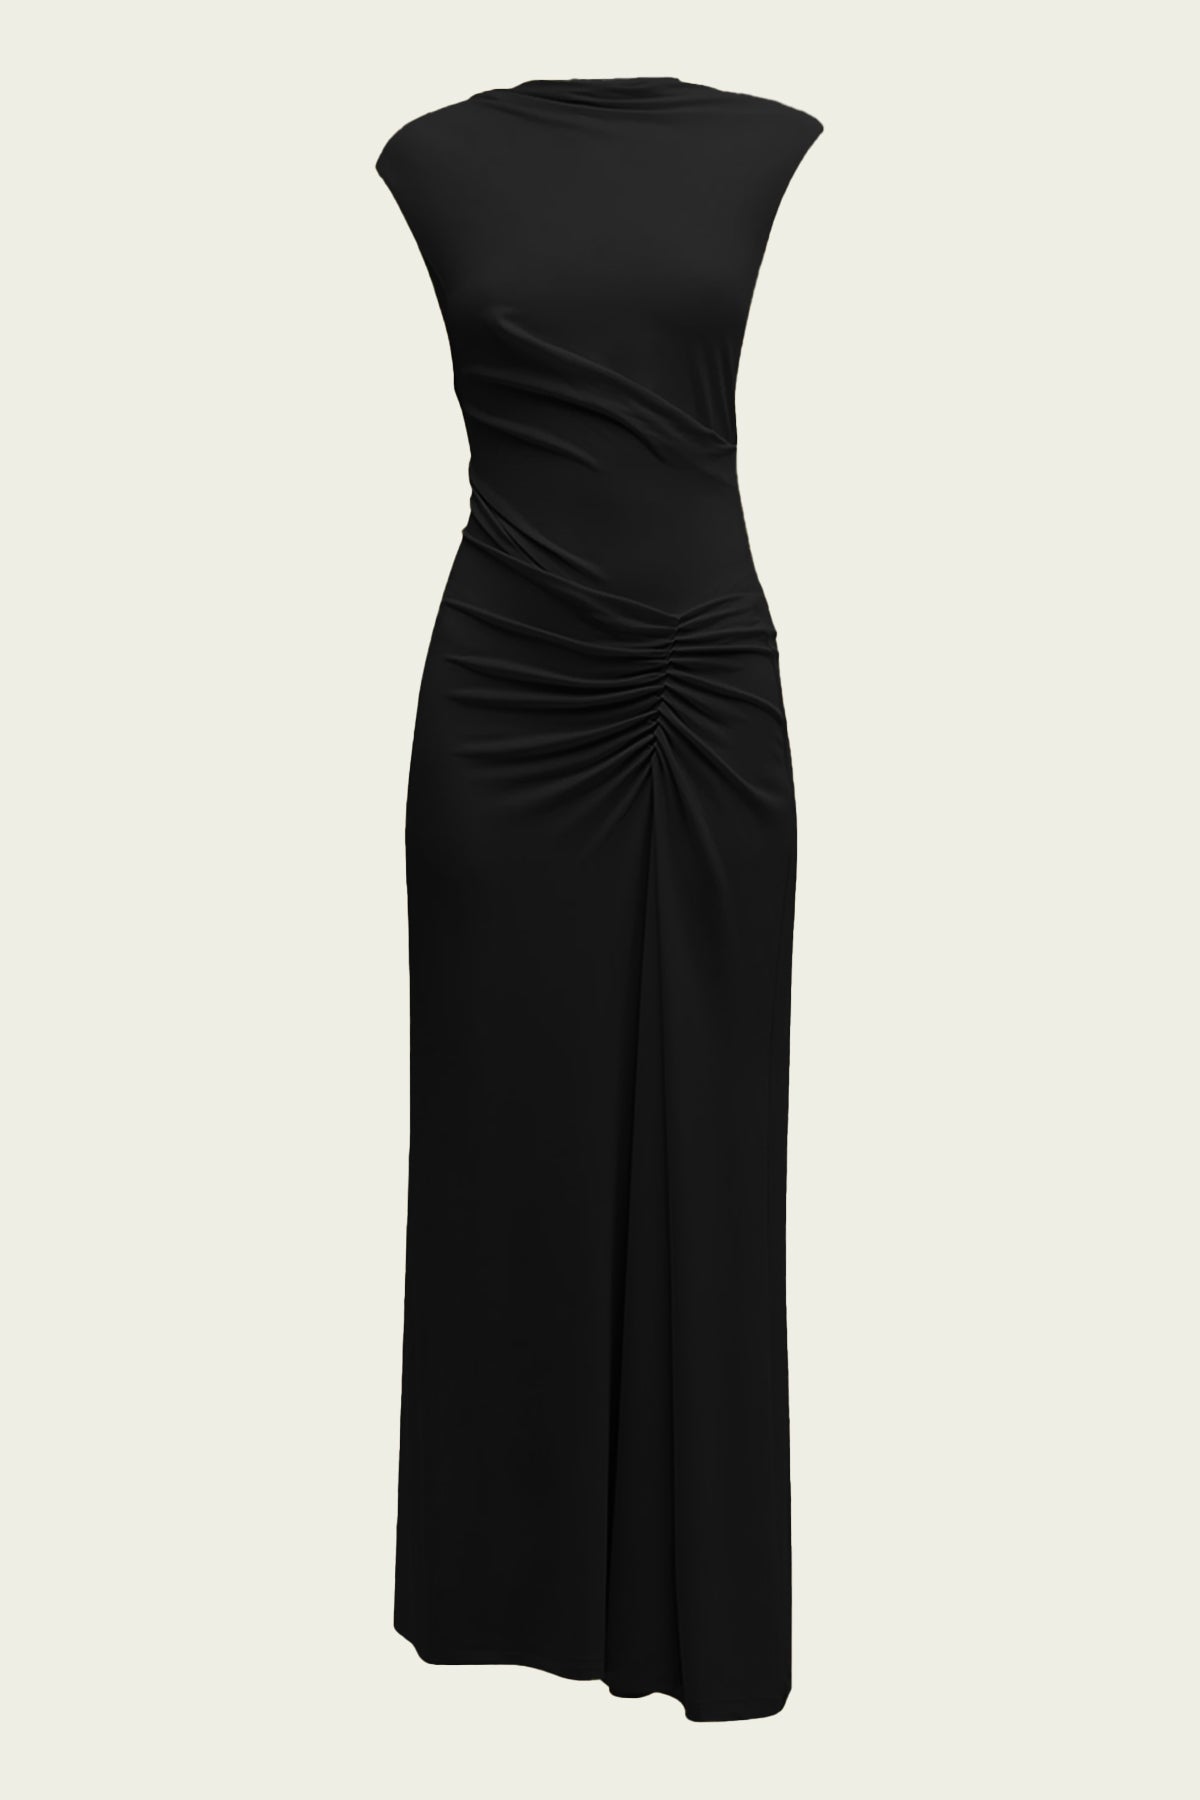 Acacia Sleeveless Midi Dress in Black - shop-olivia.com